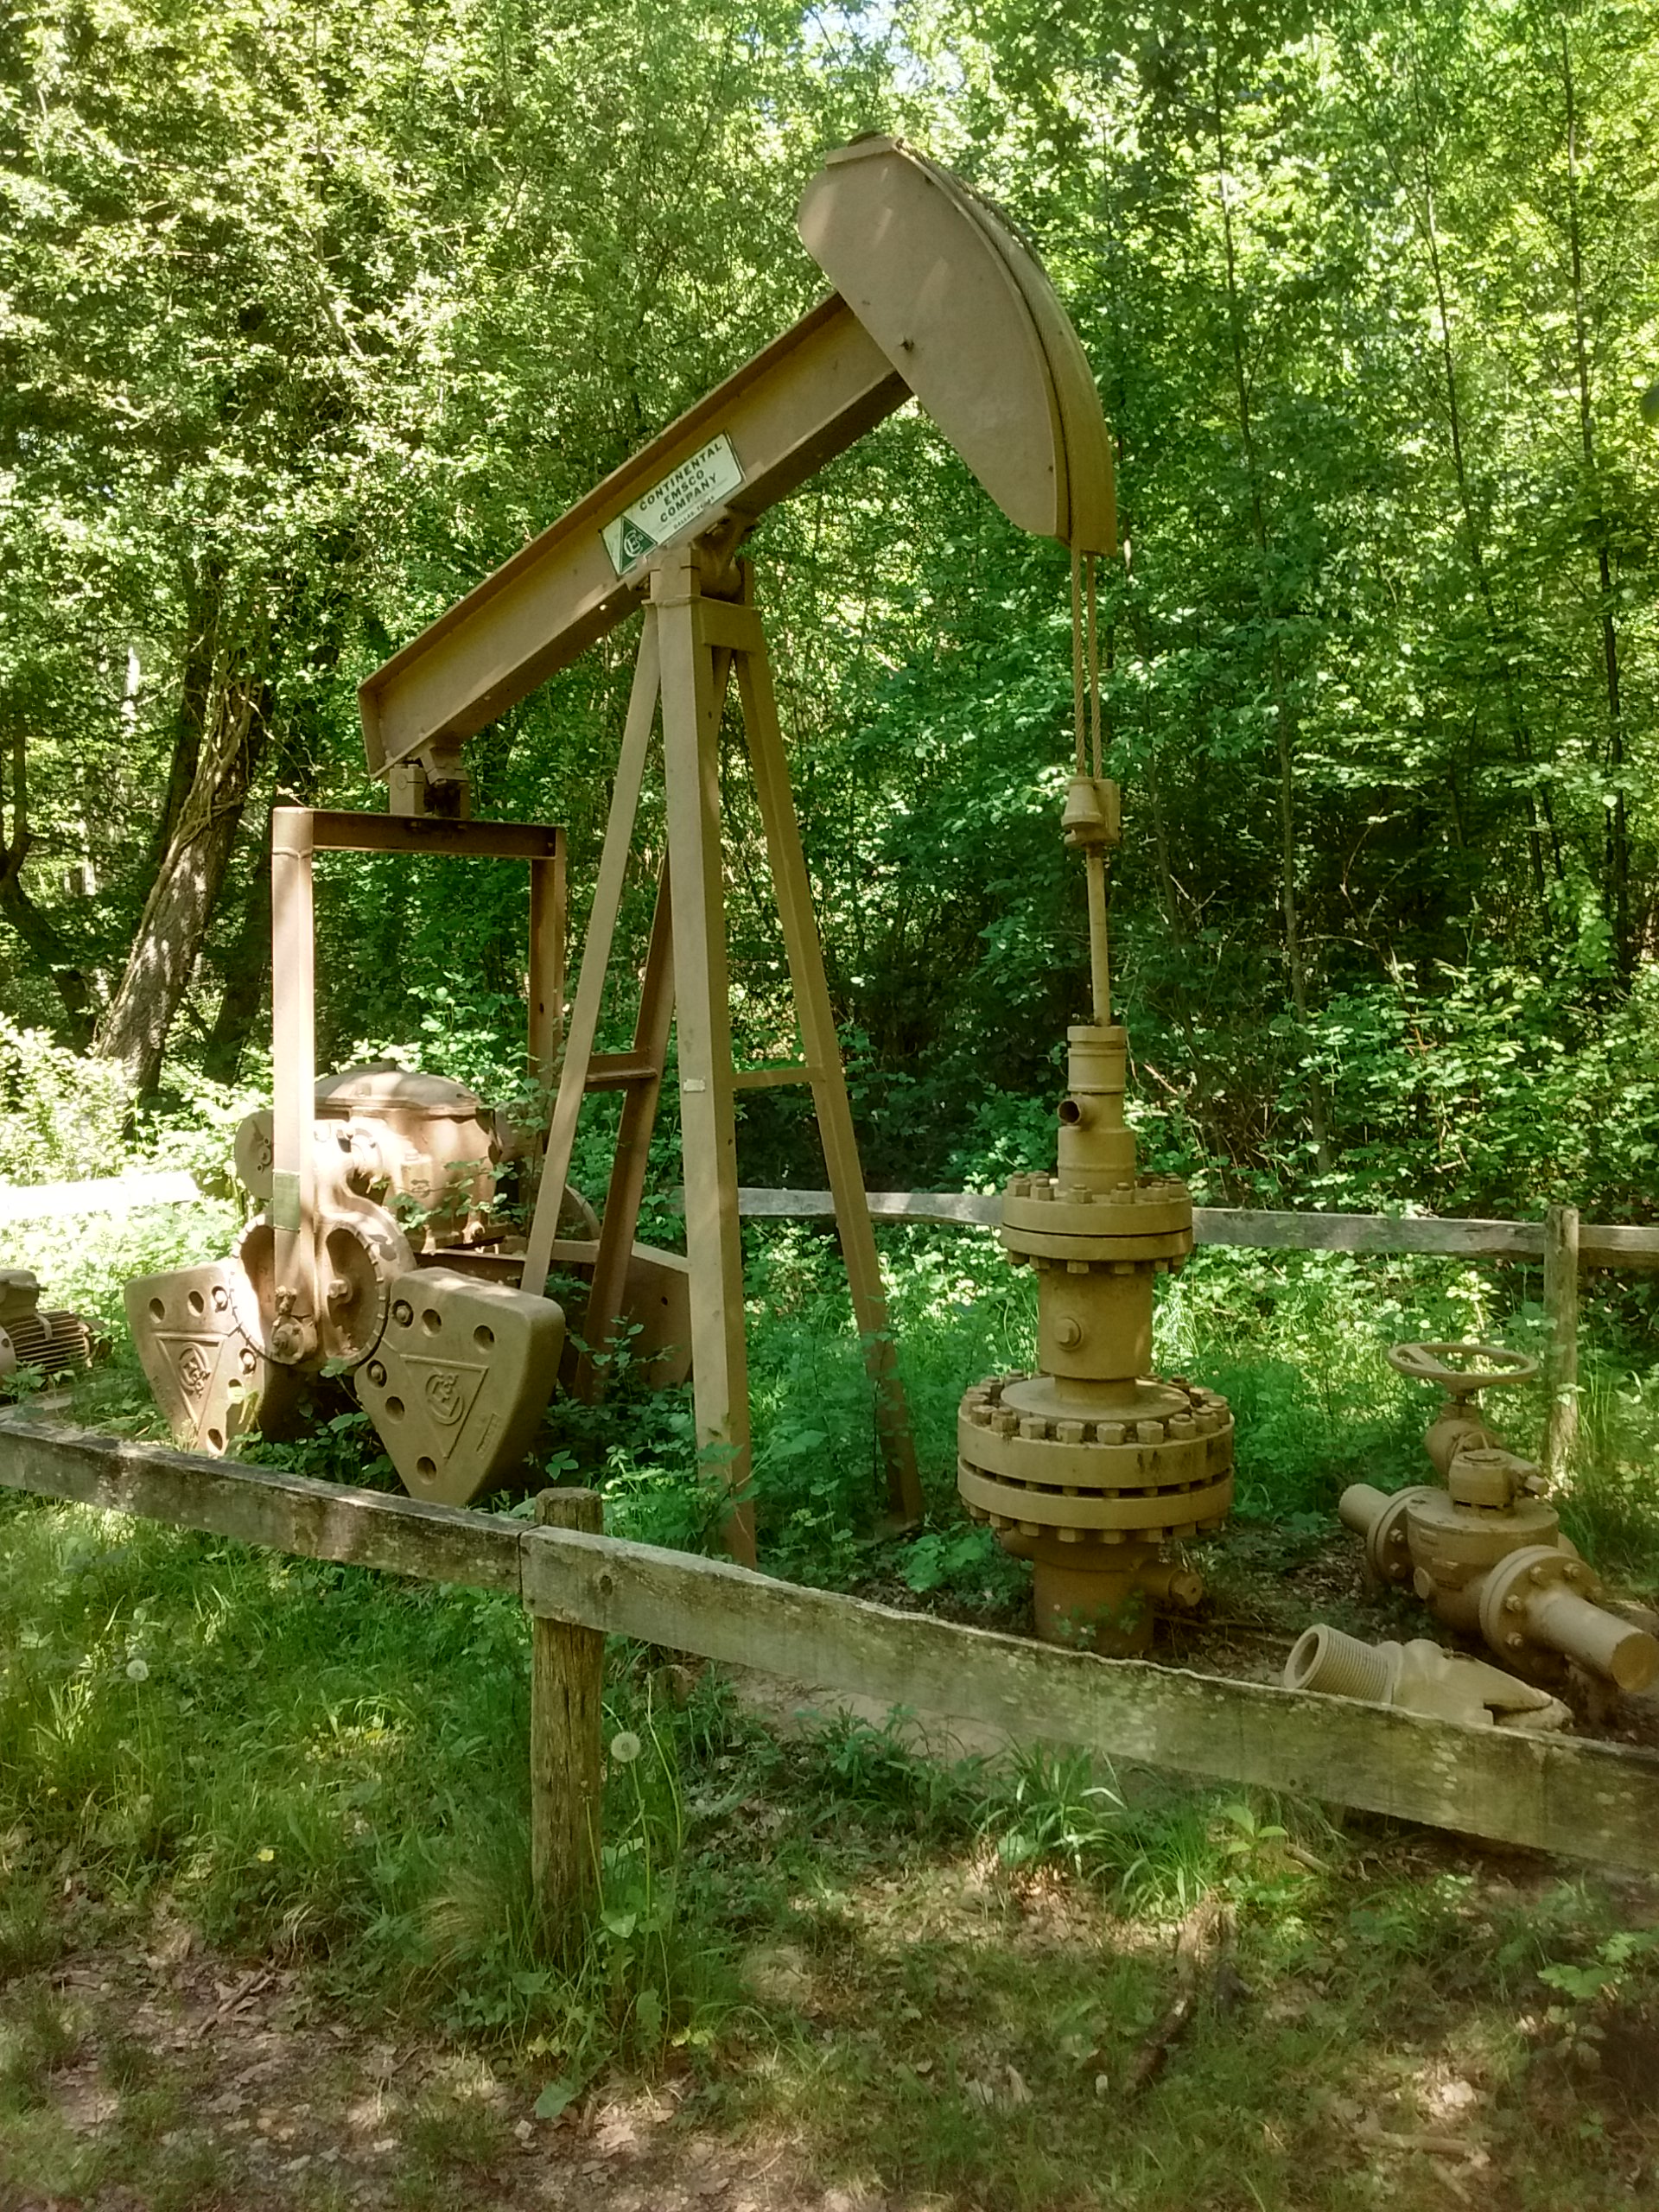 File:Puits de pétrole.jpg - Wikimedia Commons